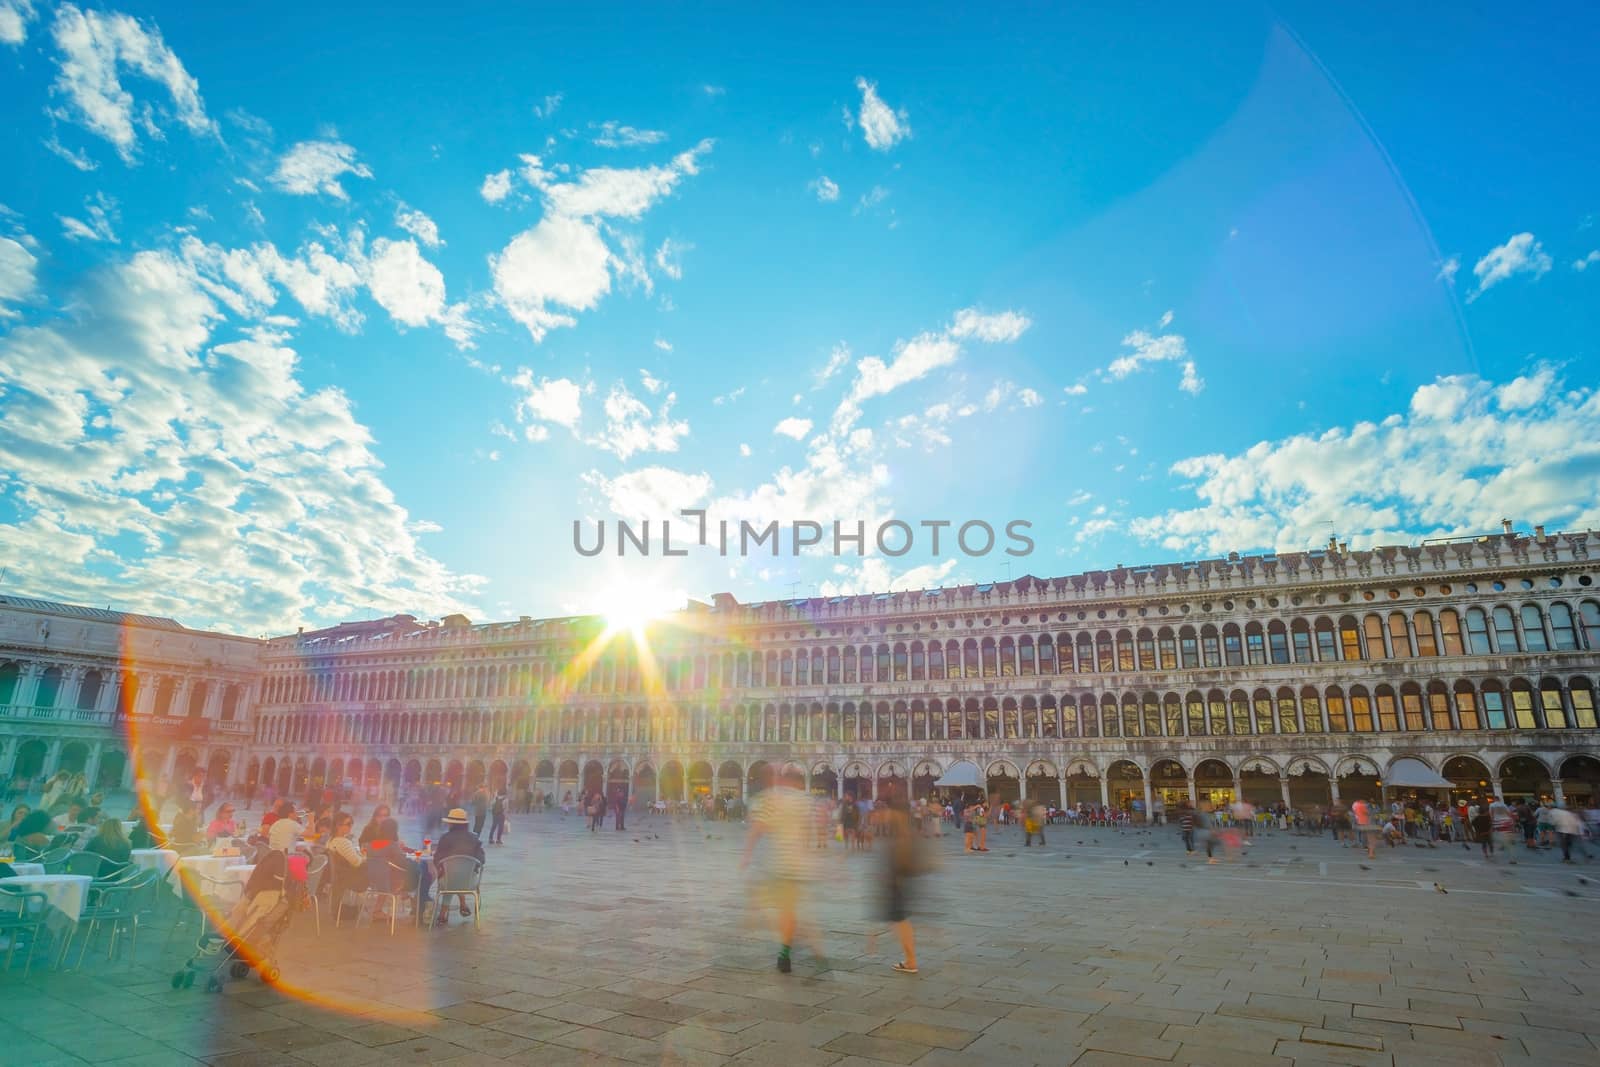 VENICE, ITALY - CIRCA 2015: Saint Mark's Square in Venice.